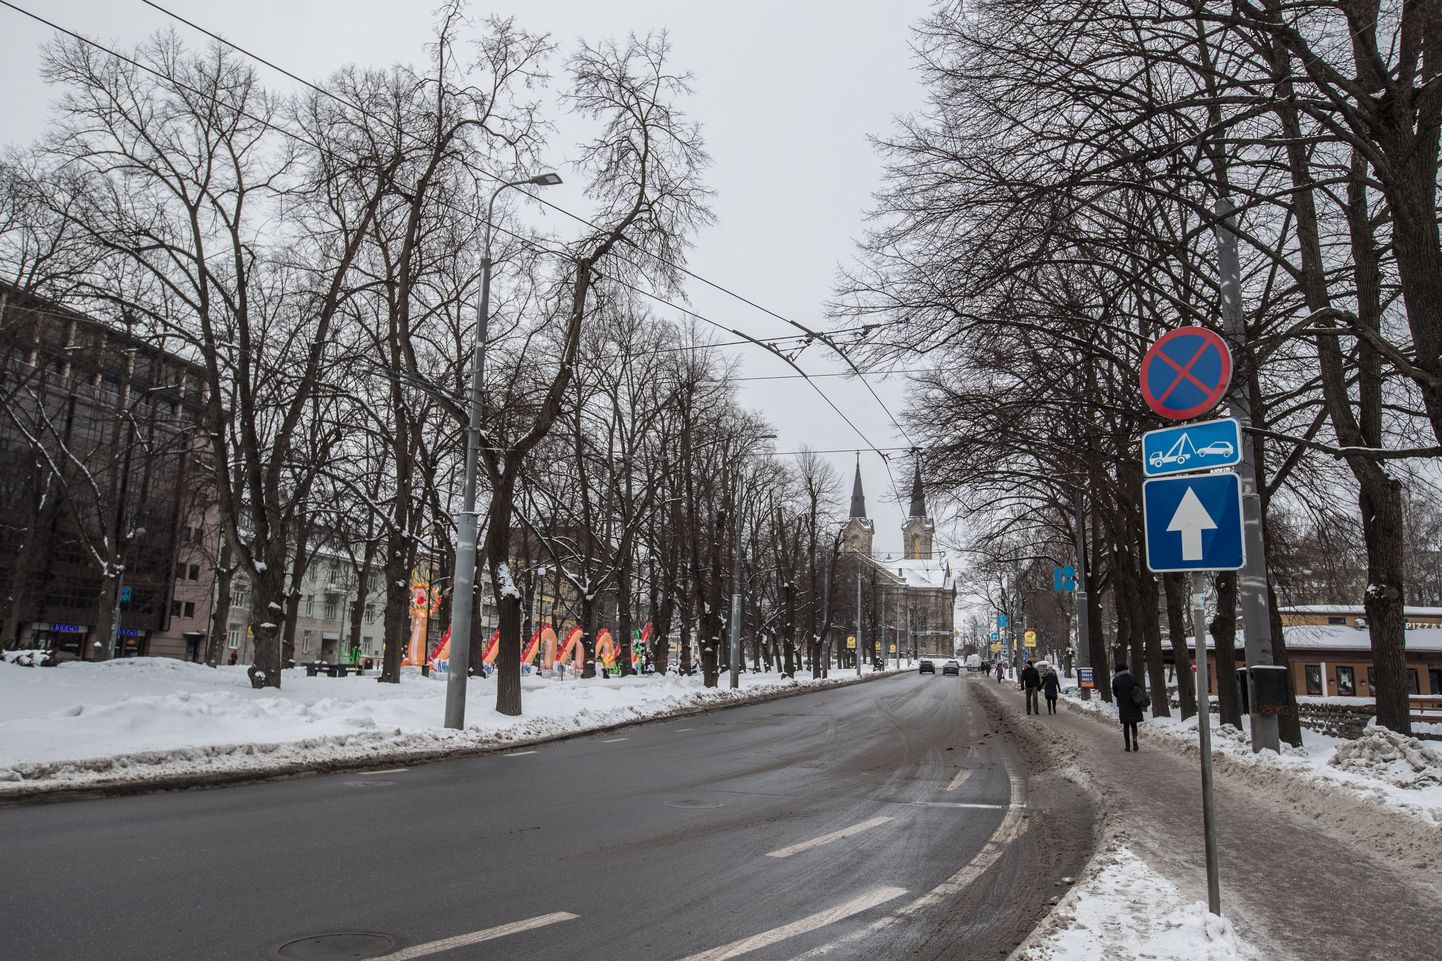 Фирма Snabb организует неделю бесплатной парковки на бульваре Каарли, 2 в Таллинне.